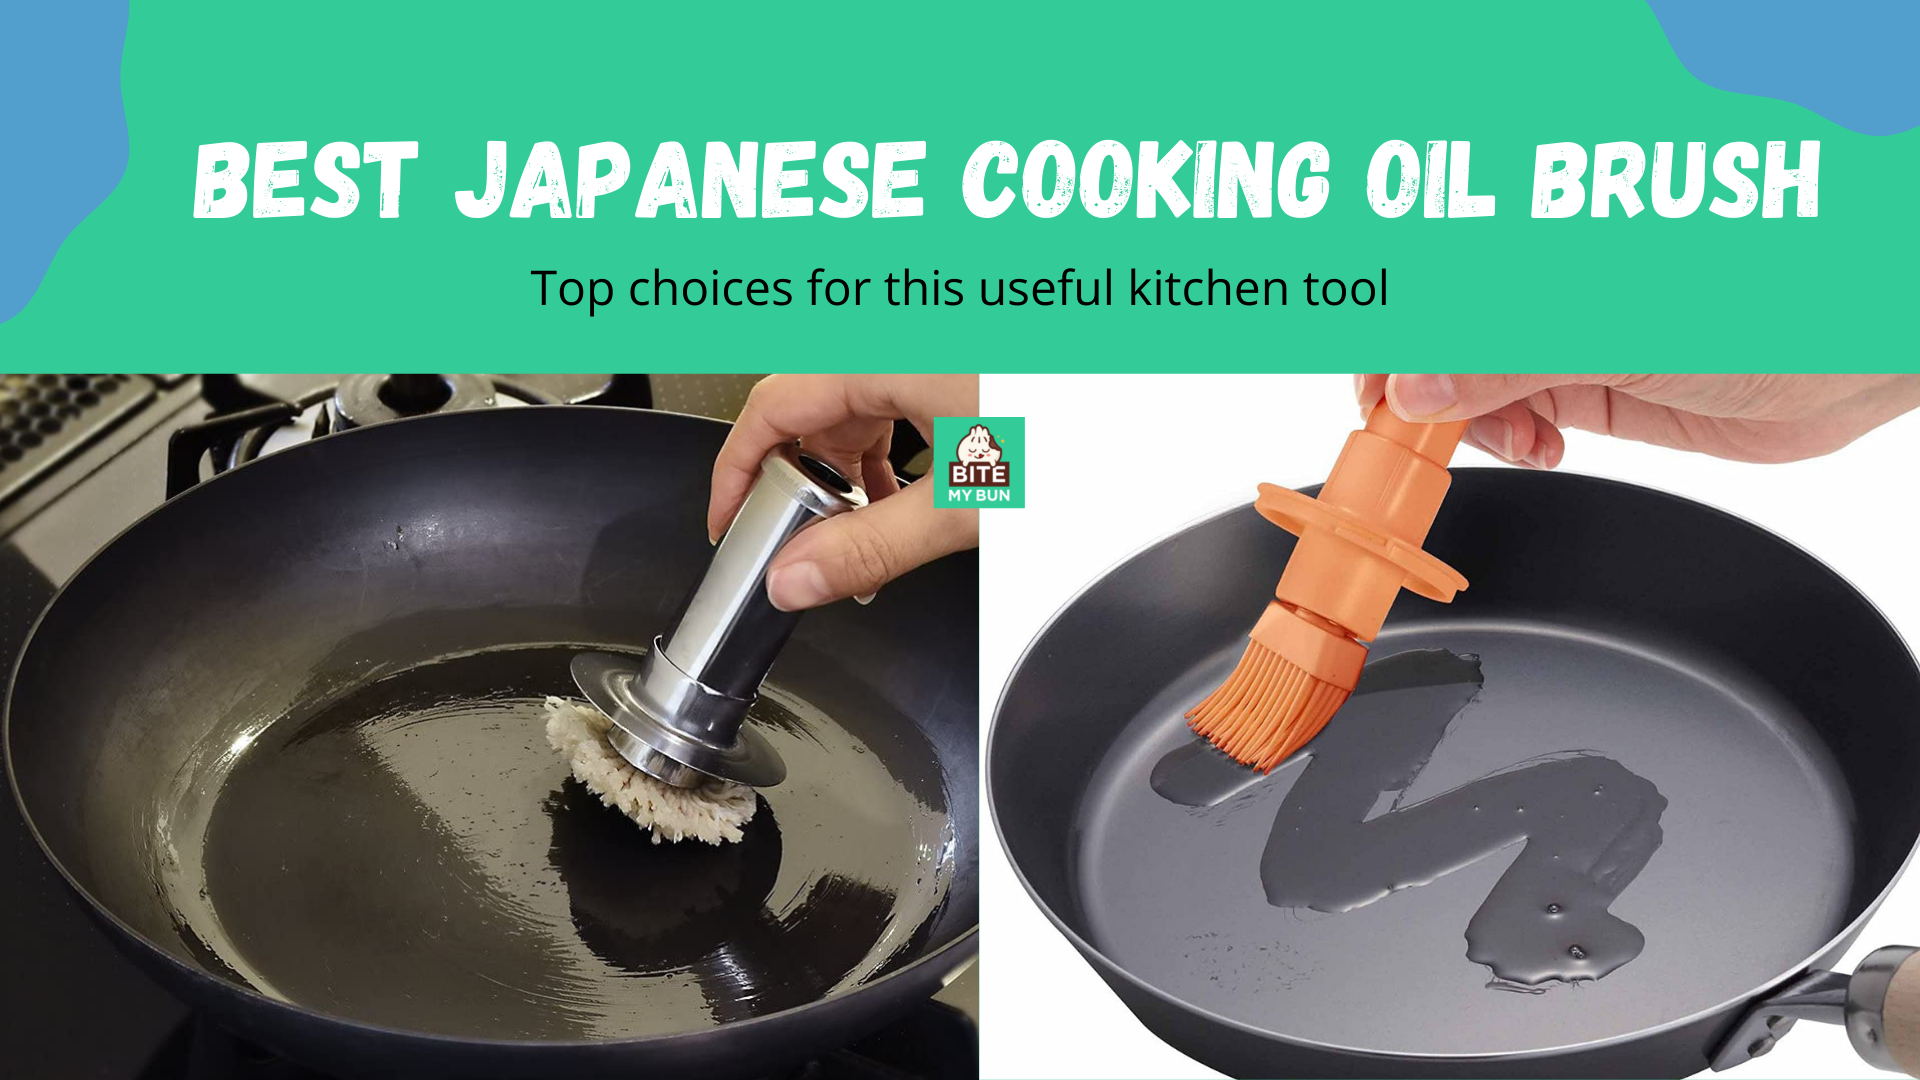 แปรงทาน้ำมันปรุงอาหารญี่ปุ่น | ตัวเลือกยอดนิยมสำหรับเครื่องมือทำครัวที่มีประโยชน์นี้